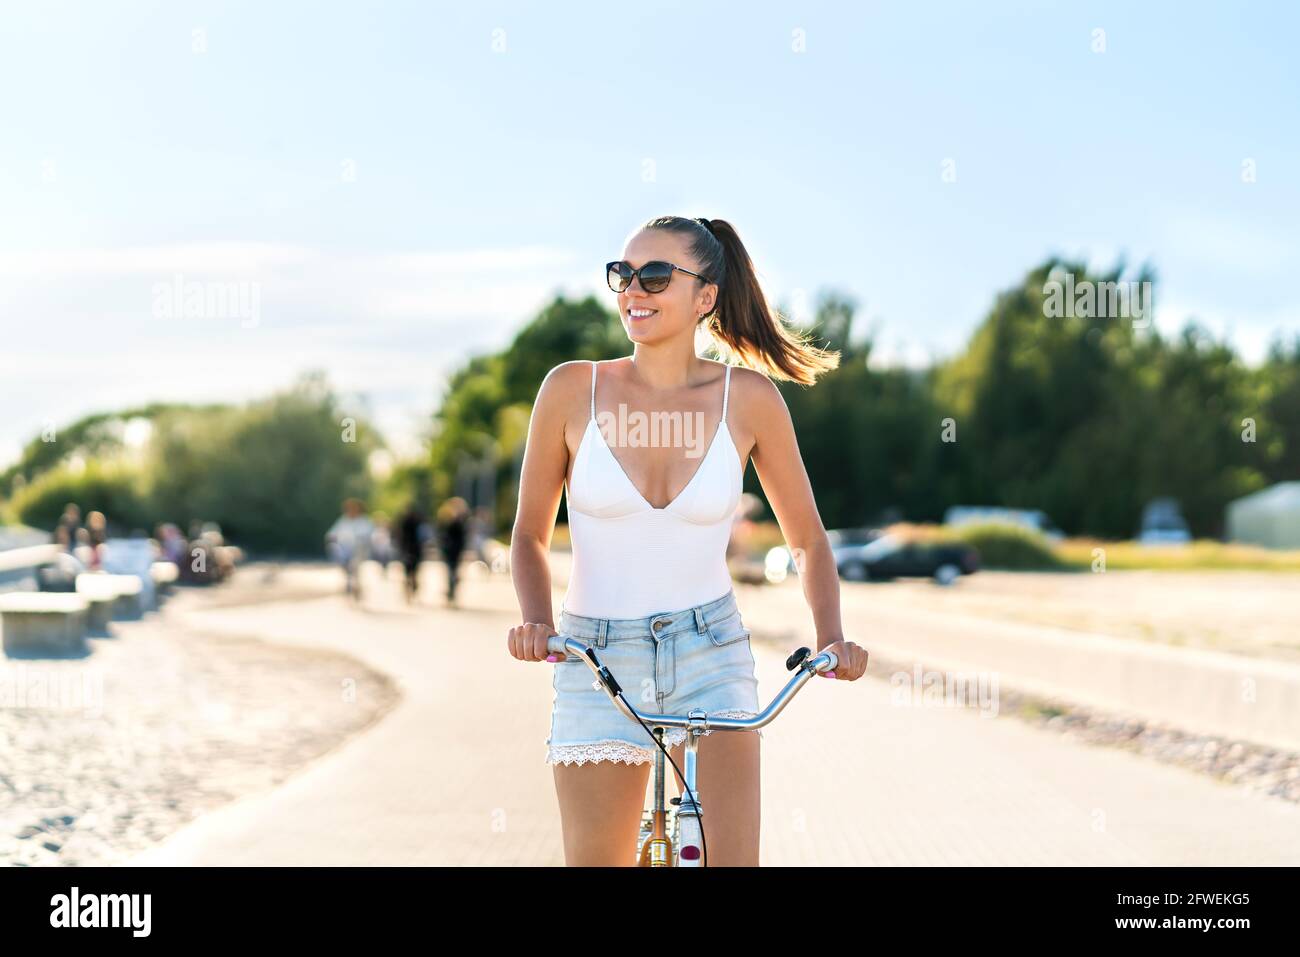 Hübsche Frau, die Fahrrad im Stadtpark Radweg und Straße reitet. Fahrradpromenade im Sommer. Fröhlicher Radfahrer. Modische, trendige Jeans-Shorts. Stockfoto